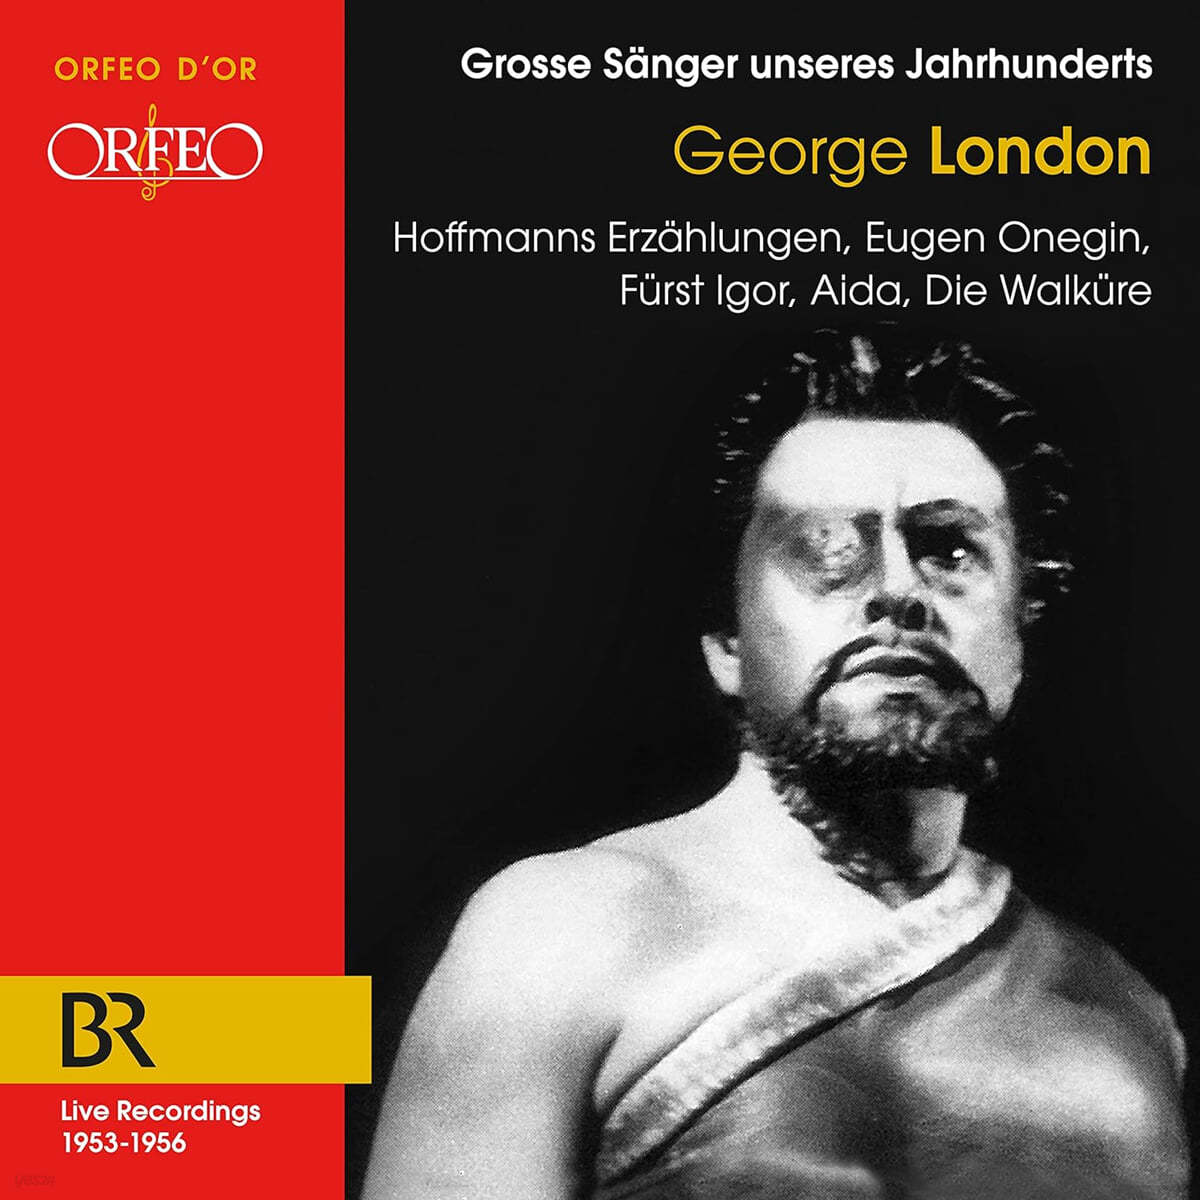 George London 오펜바흐: '호프만 이야기' / 차이코프스키: '예브게니 오네긴' / 바그너: '발퀴레' / 베르디: '아이다' 외 (Recordings 1953-1956, Wagner, Verdi, Offenbach, Borodin, Tchaikovsky)